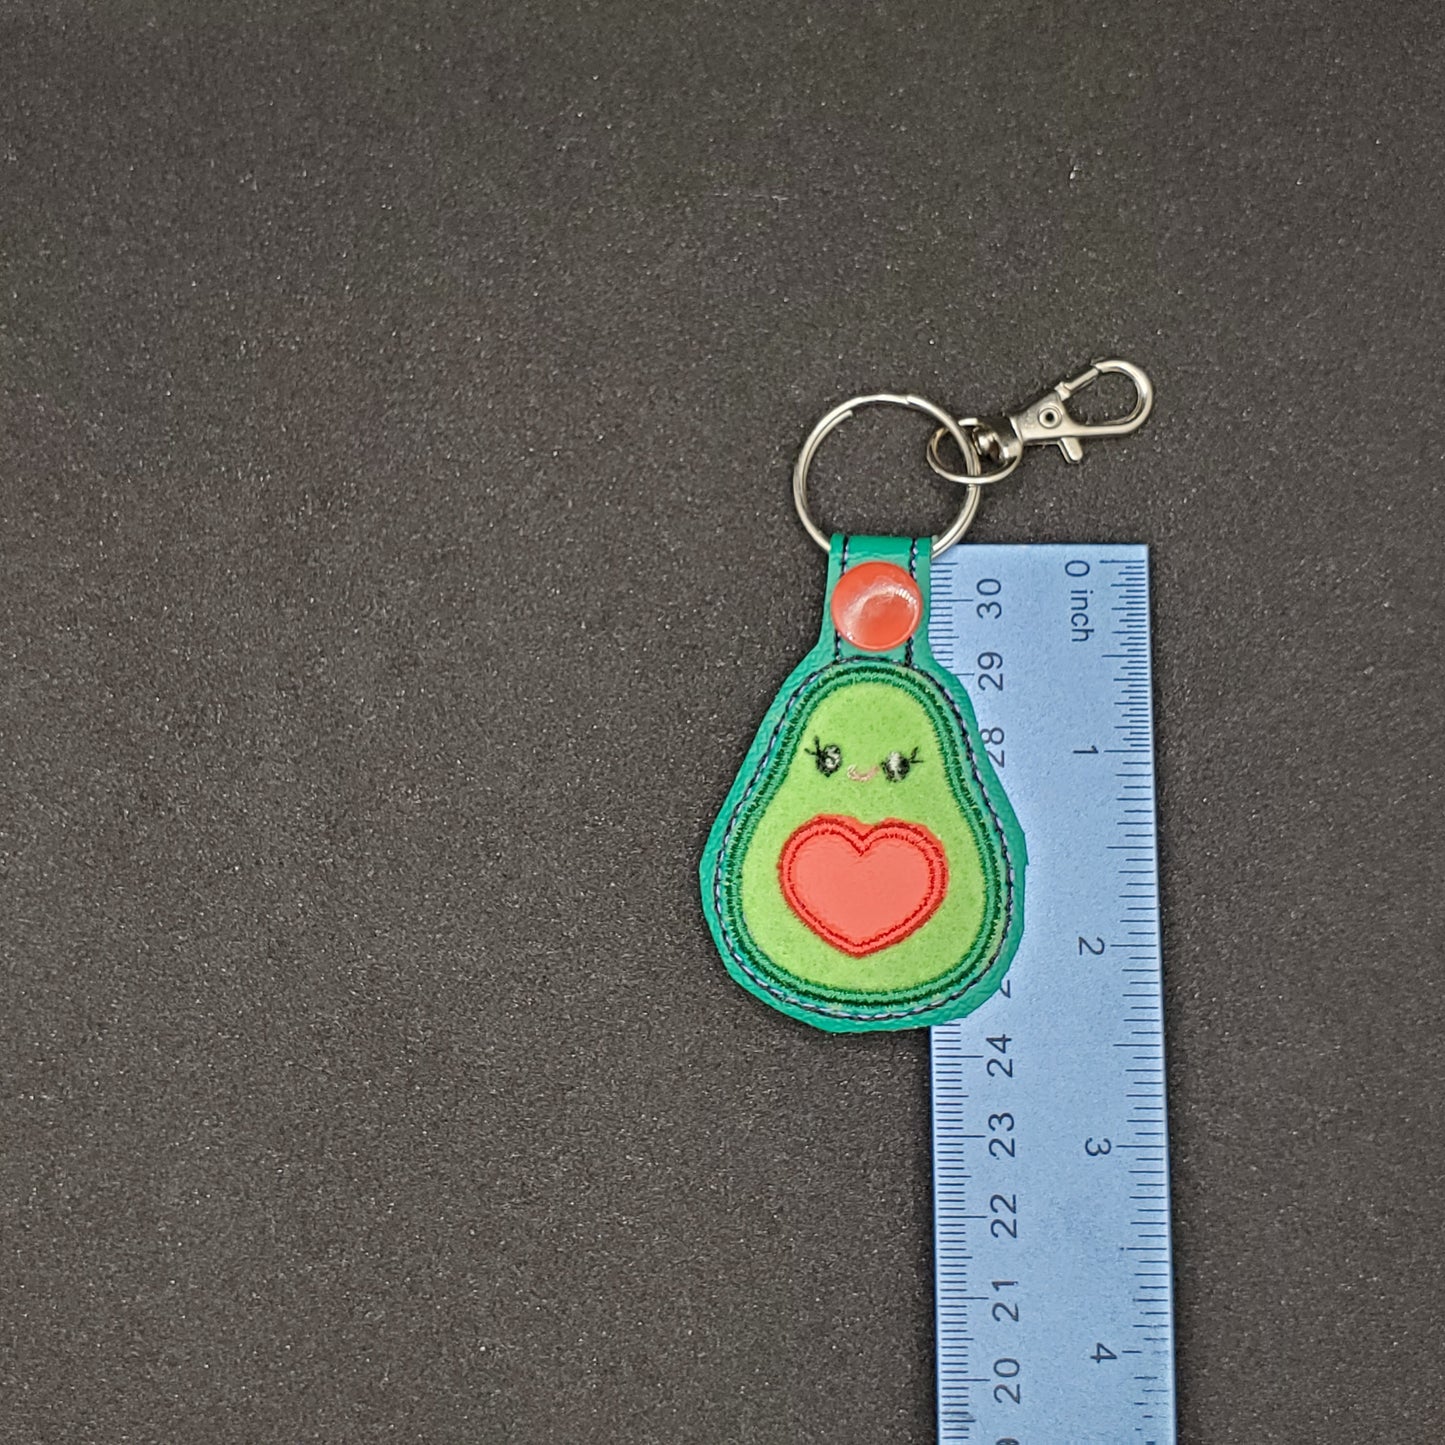 Avocado - Smiling Mini Avocado key chain / backpack charm